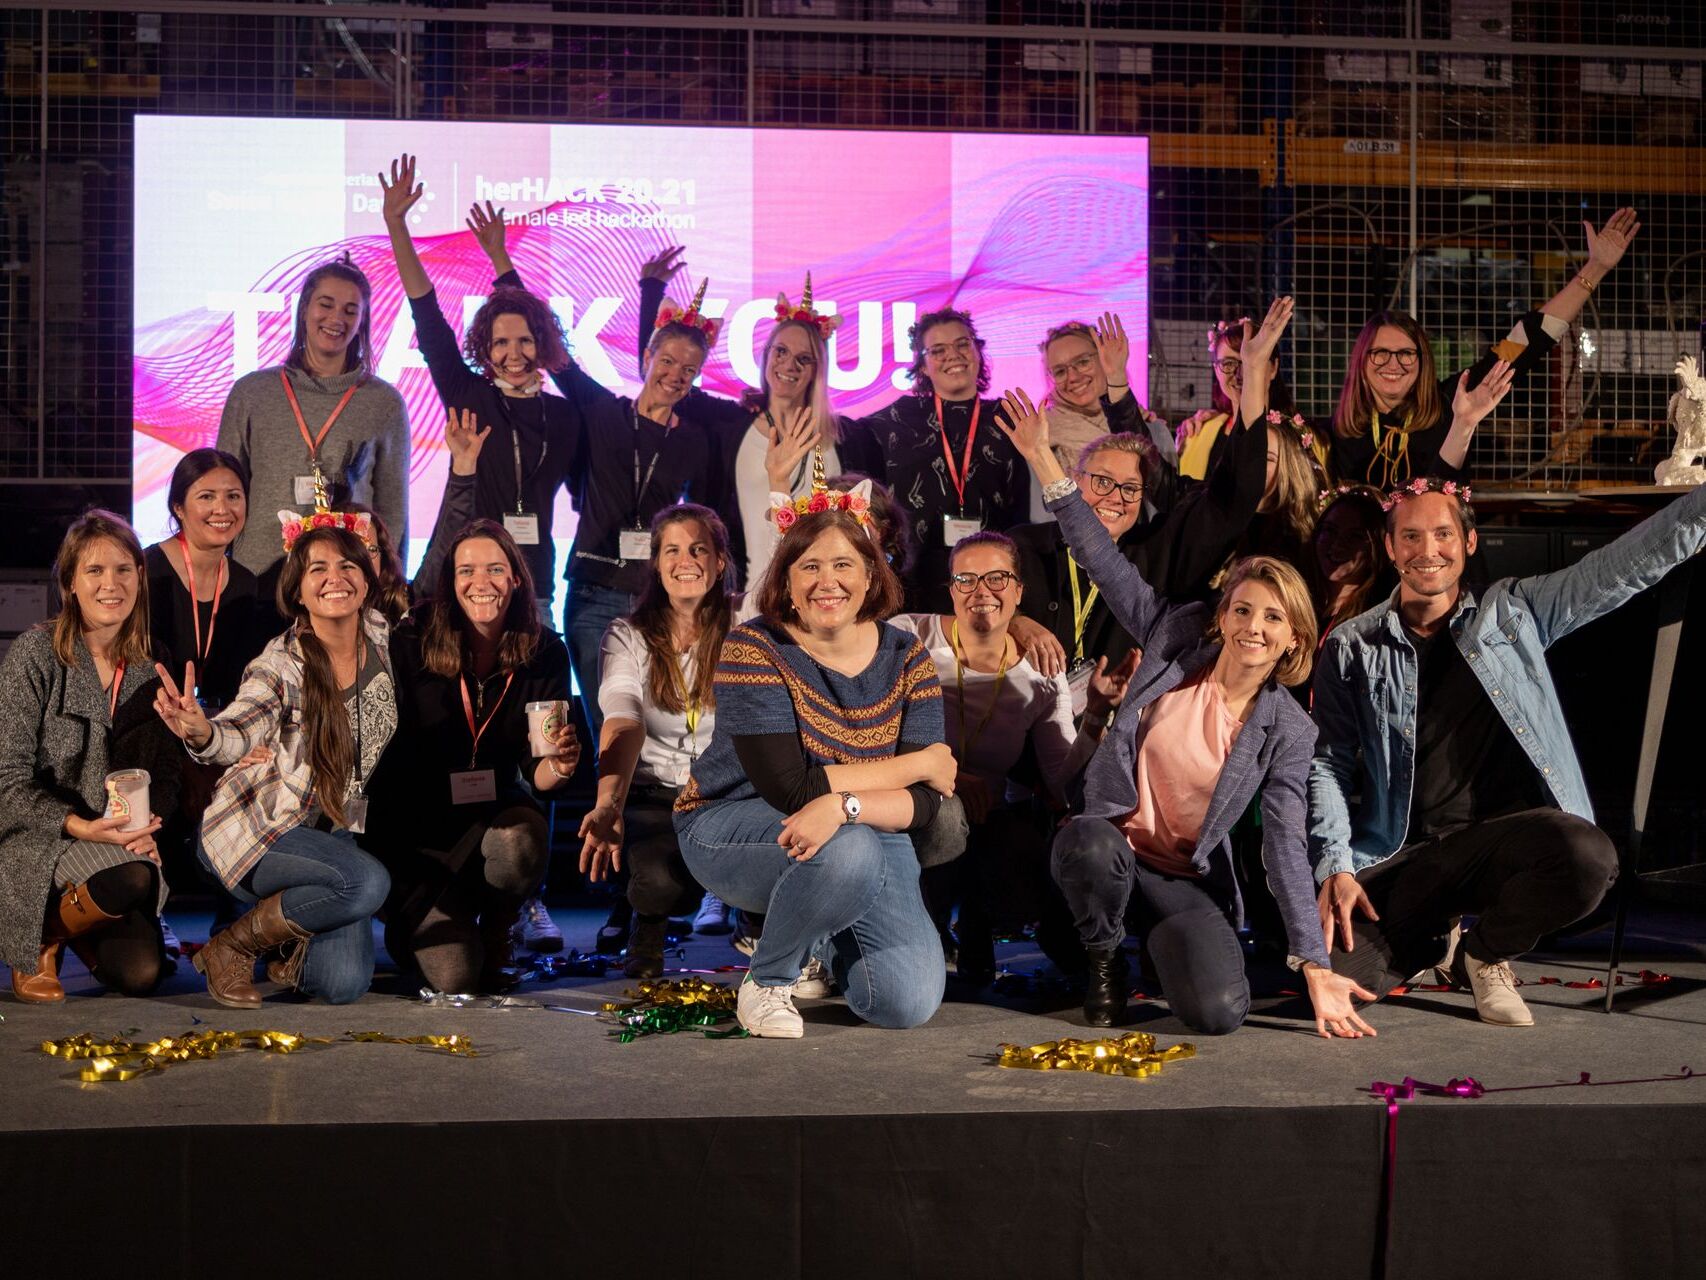 Женскиот хакатон „HerHack“, организиран на 6 и 7 ноември како дел од „Швајцарскиот дигитален ден“, го освои Team Iconics, формиран од Мелани Менге, Фиона Хедигер, Јамина Сигрист, Марија Клиш и Елизабет Мекензи (Фото: Мориц Шмид)